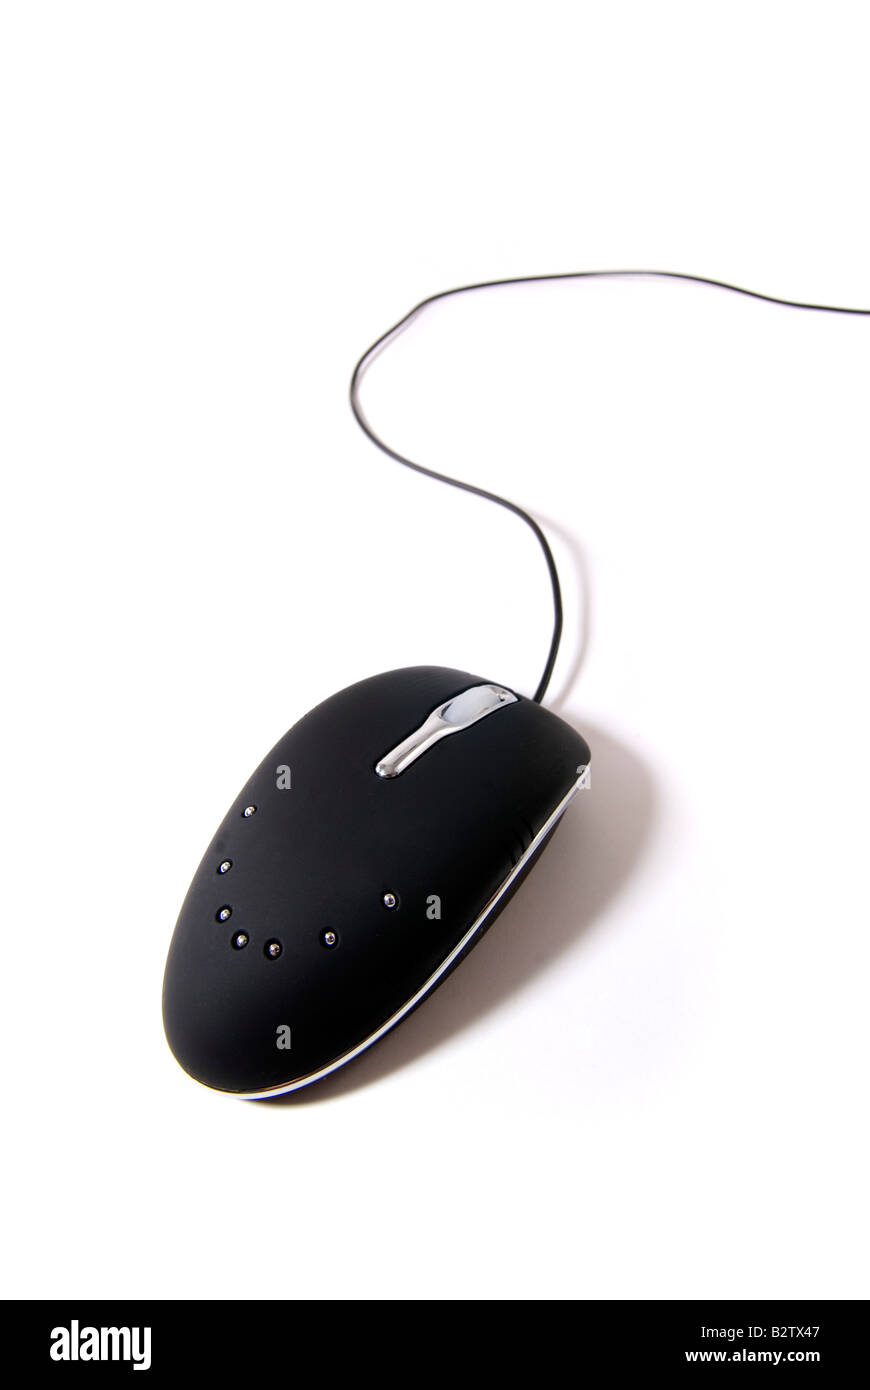 Une souris d'ordinateur dans l'isolement Banque D'Images